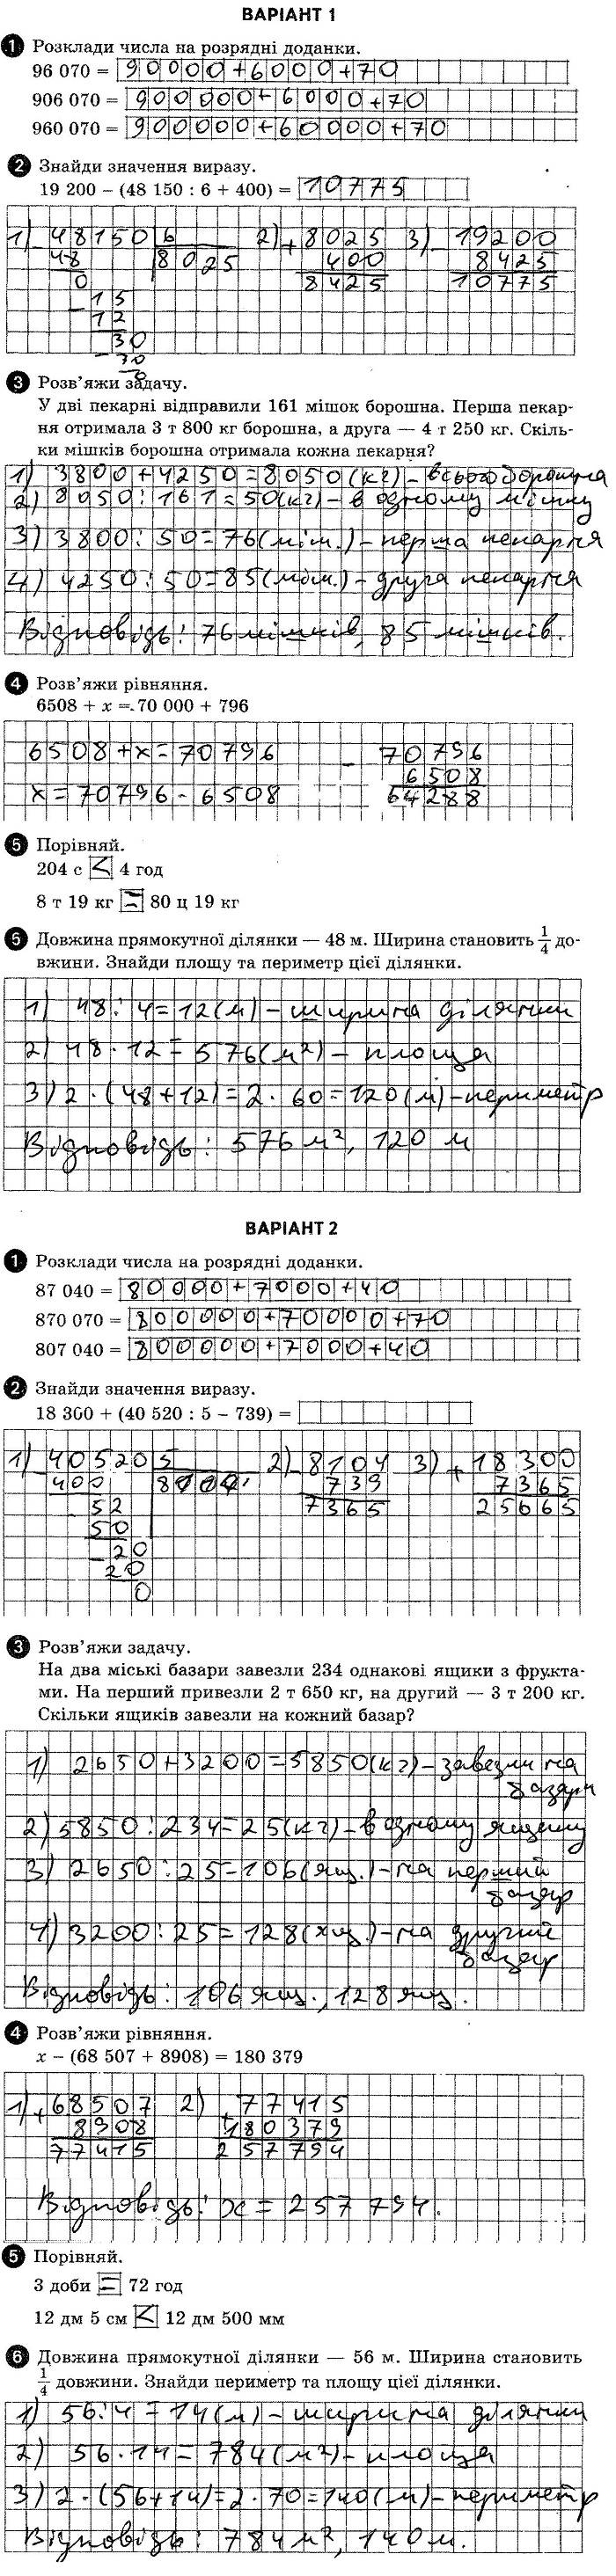 ГДЗ (відповіді) Комбінована контрольна робота 6 4 клас ДПА-2020 Математика Шевченко (підсумкові контрольні роботи)